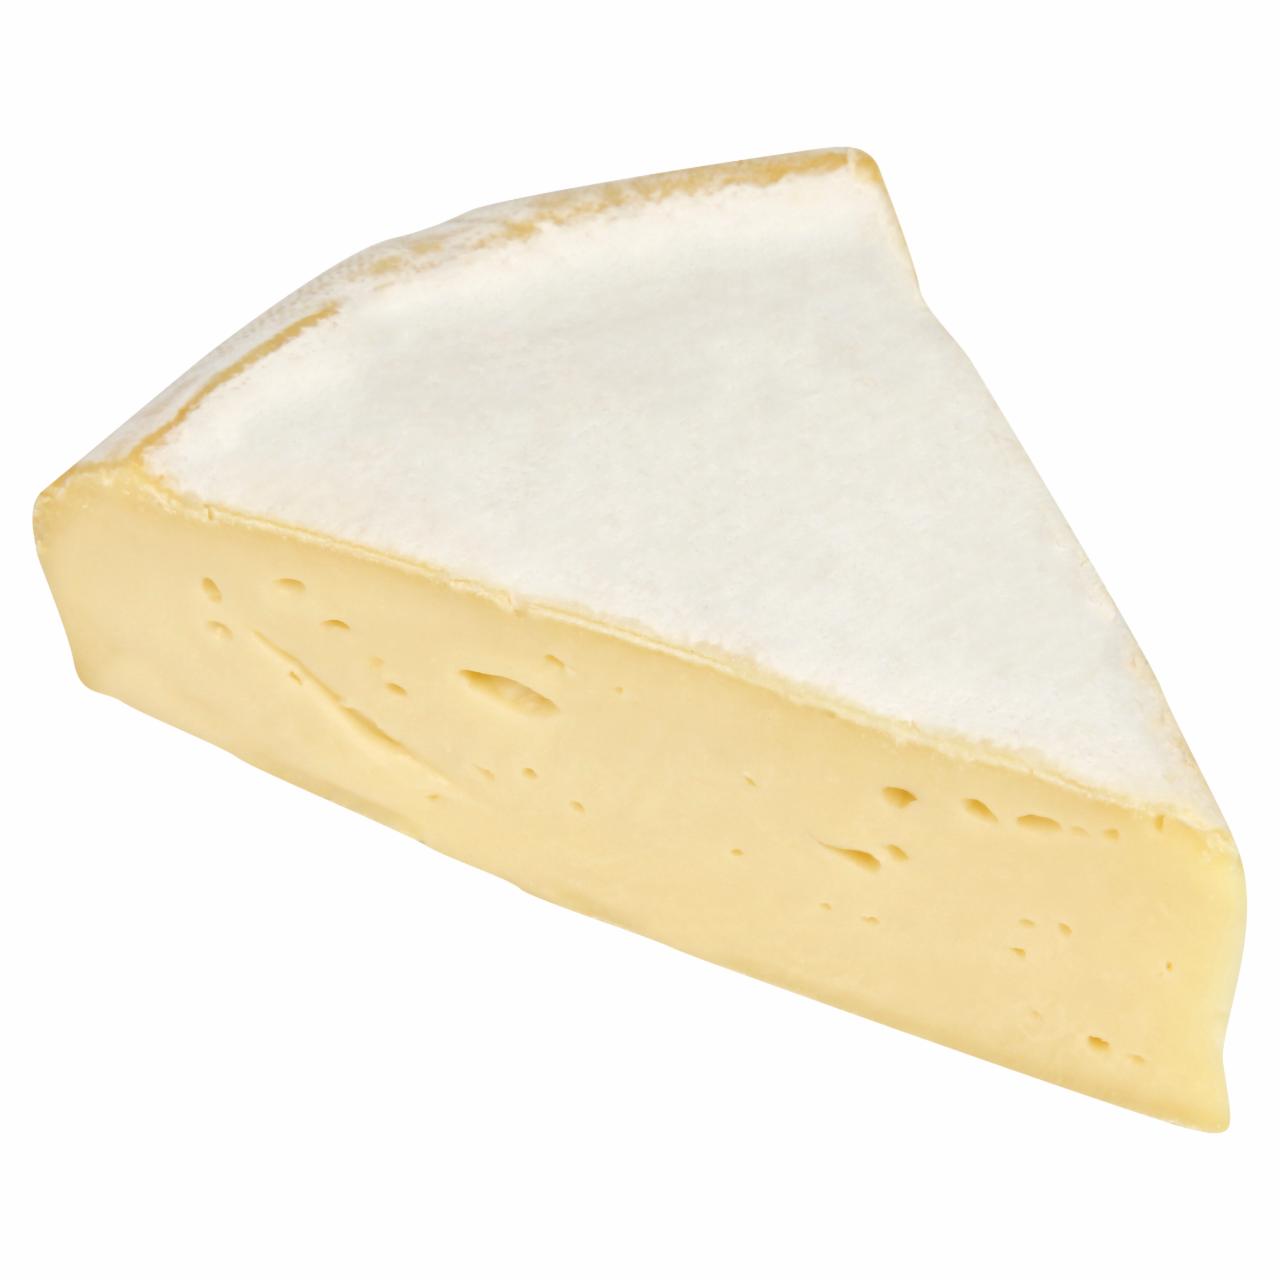 Képek - Reblochon de Savoie francia félzsíros lágy sajt